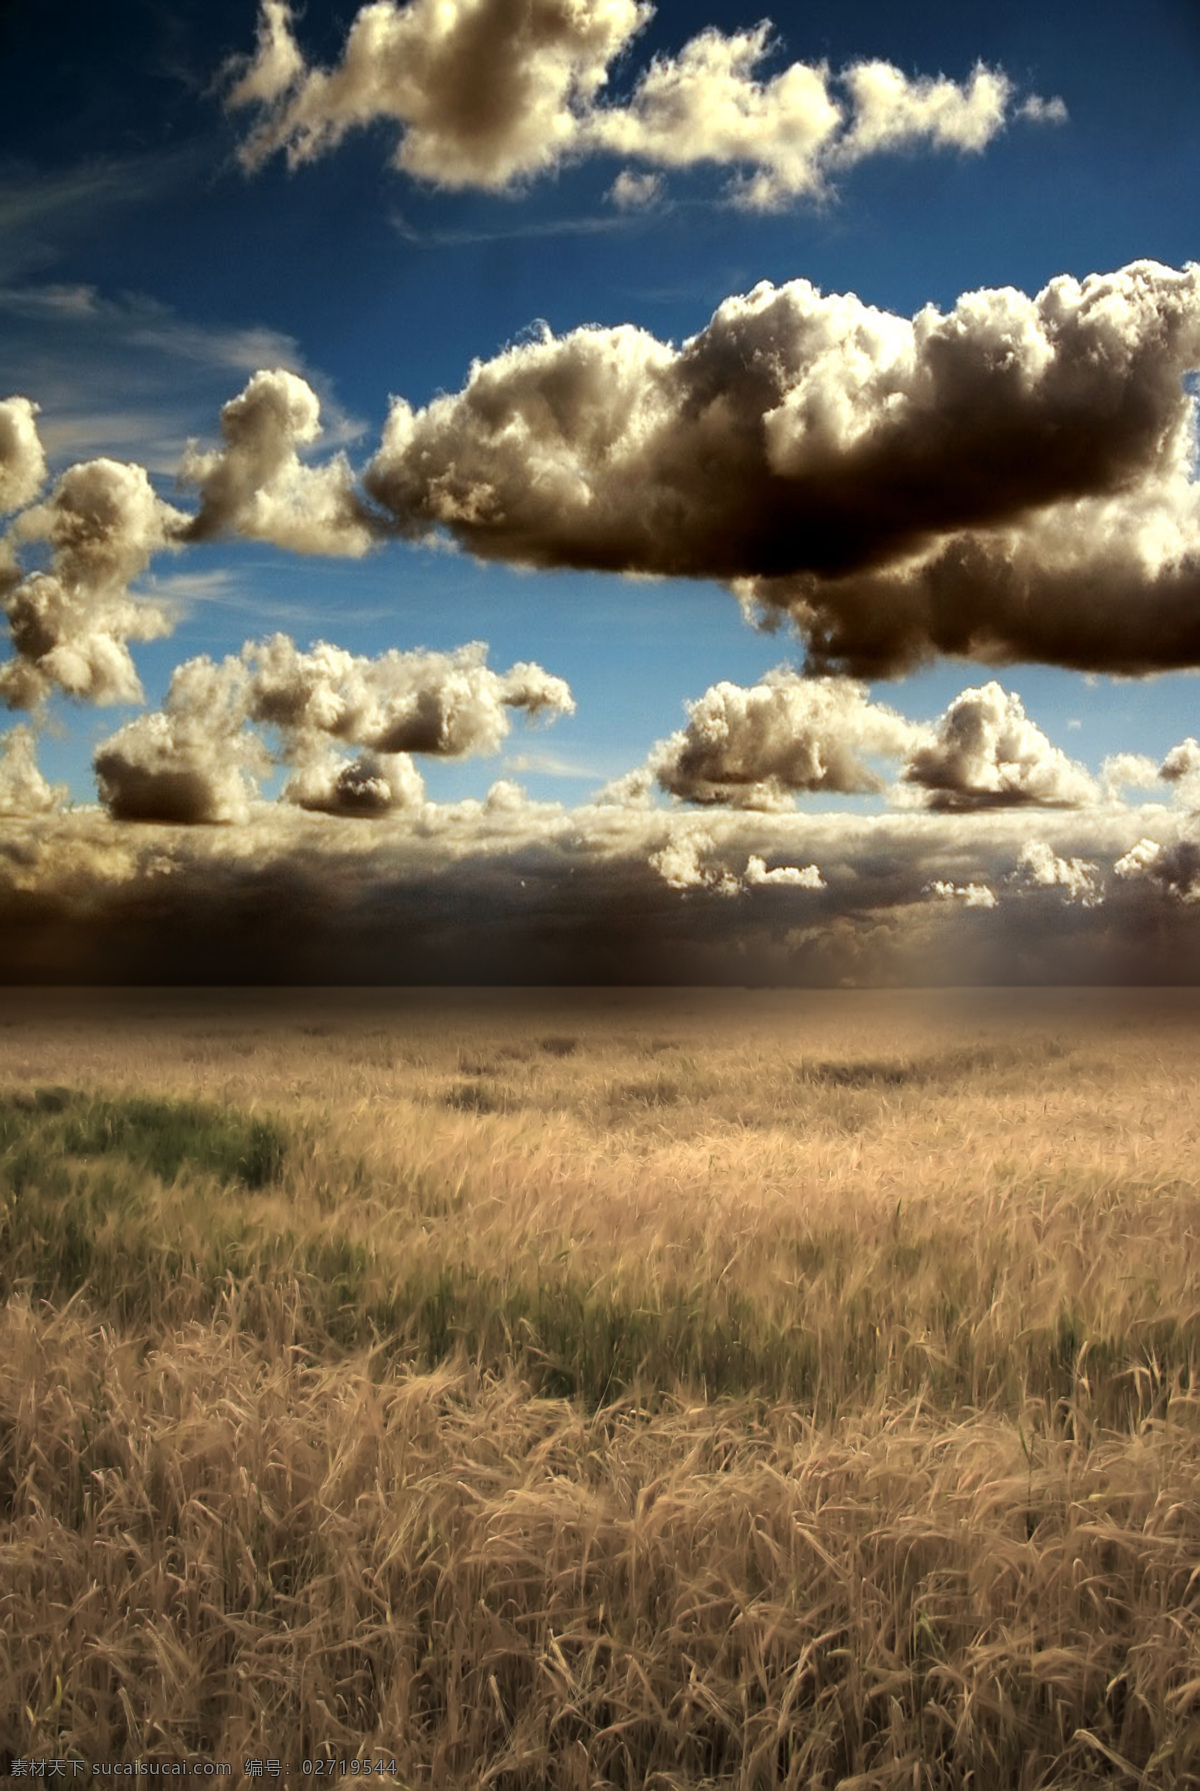 极 美的 麦田 风光图片 风光图片设计 麦田风光 天空 云朵 去 乌云 美丽风光 风景图片 美丽风景 风光 专辑 自然风光 自然景观